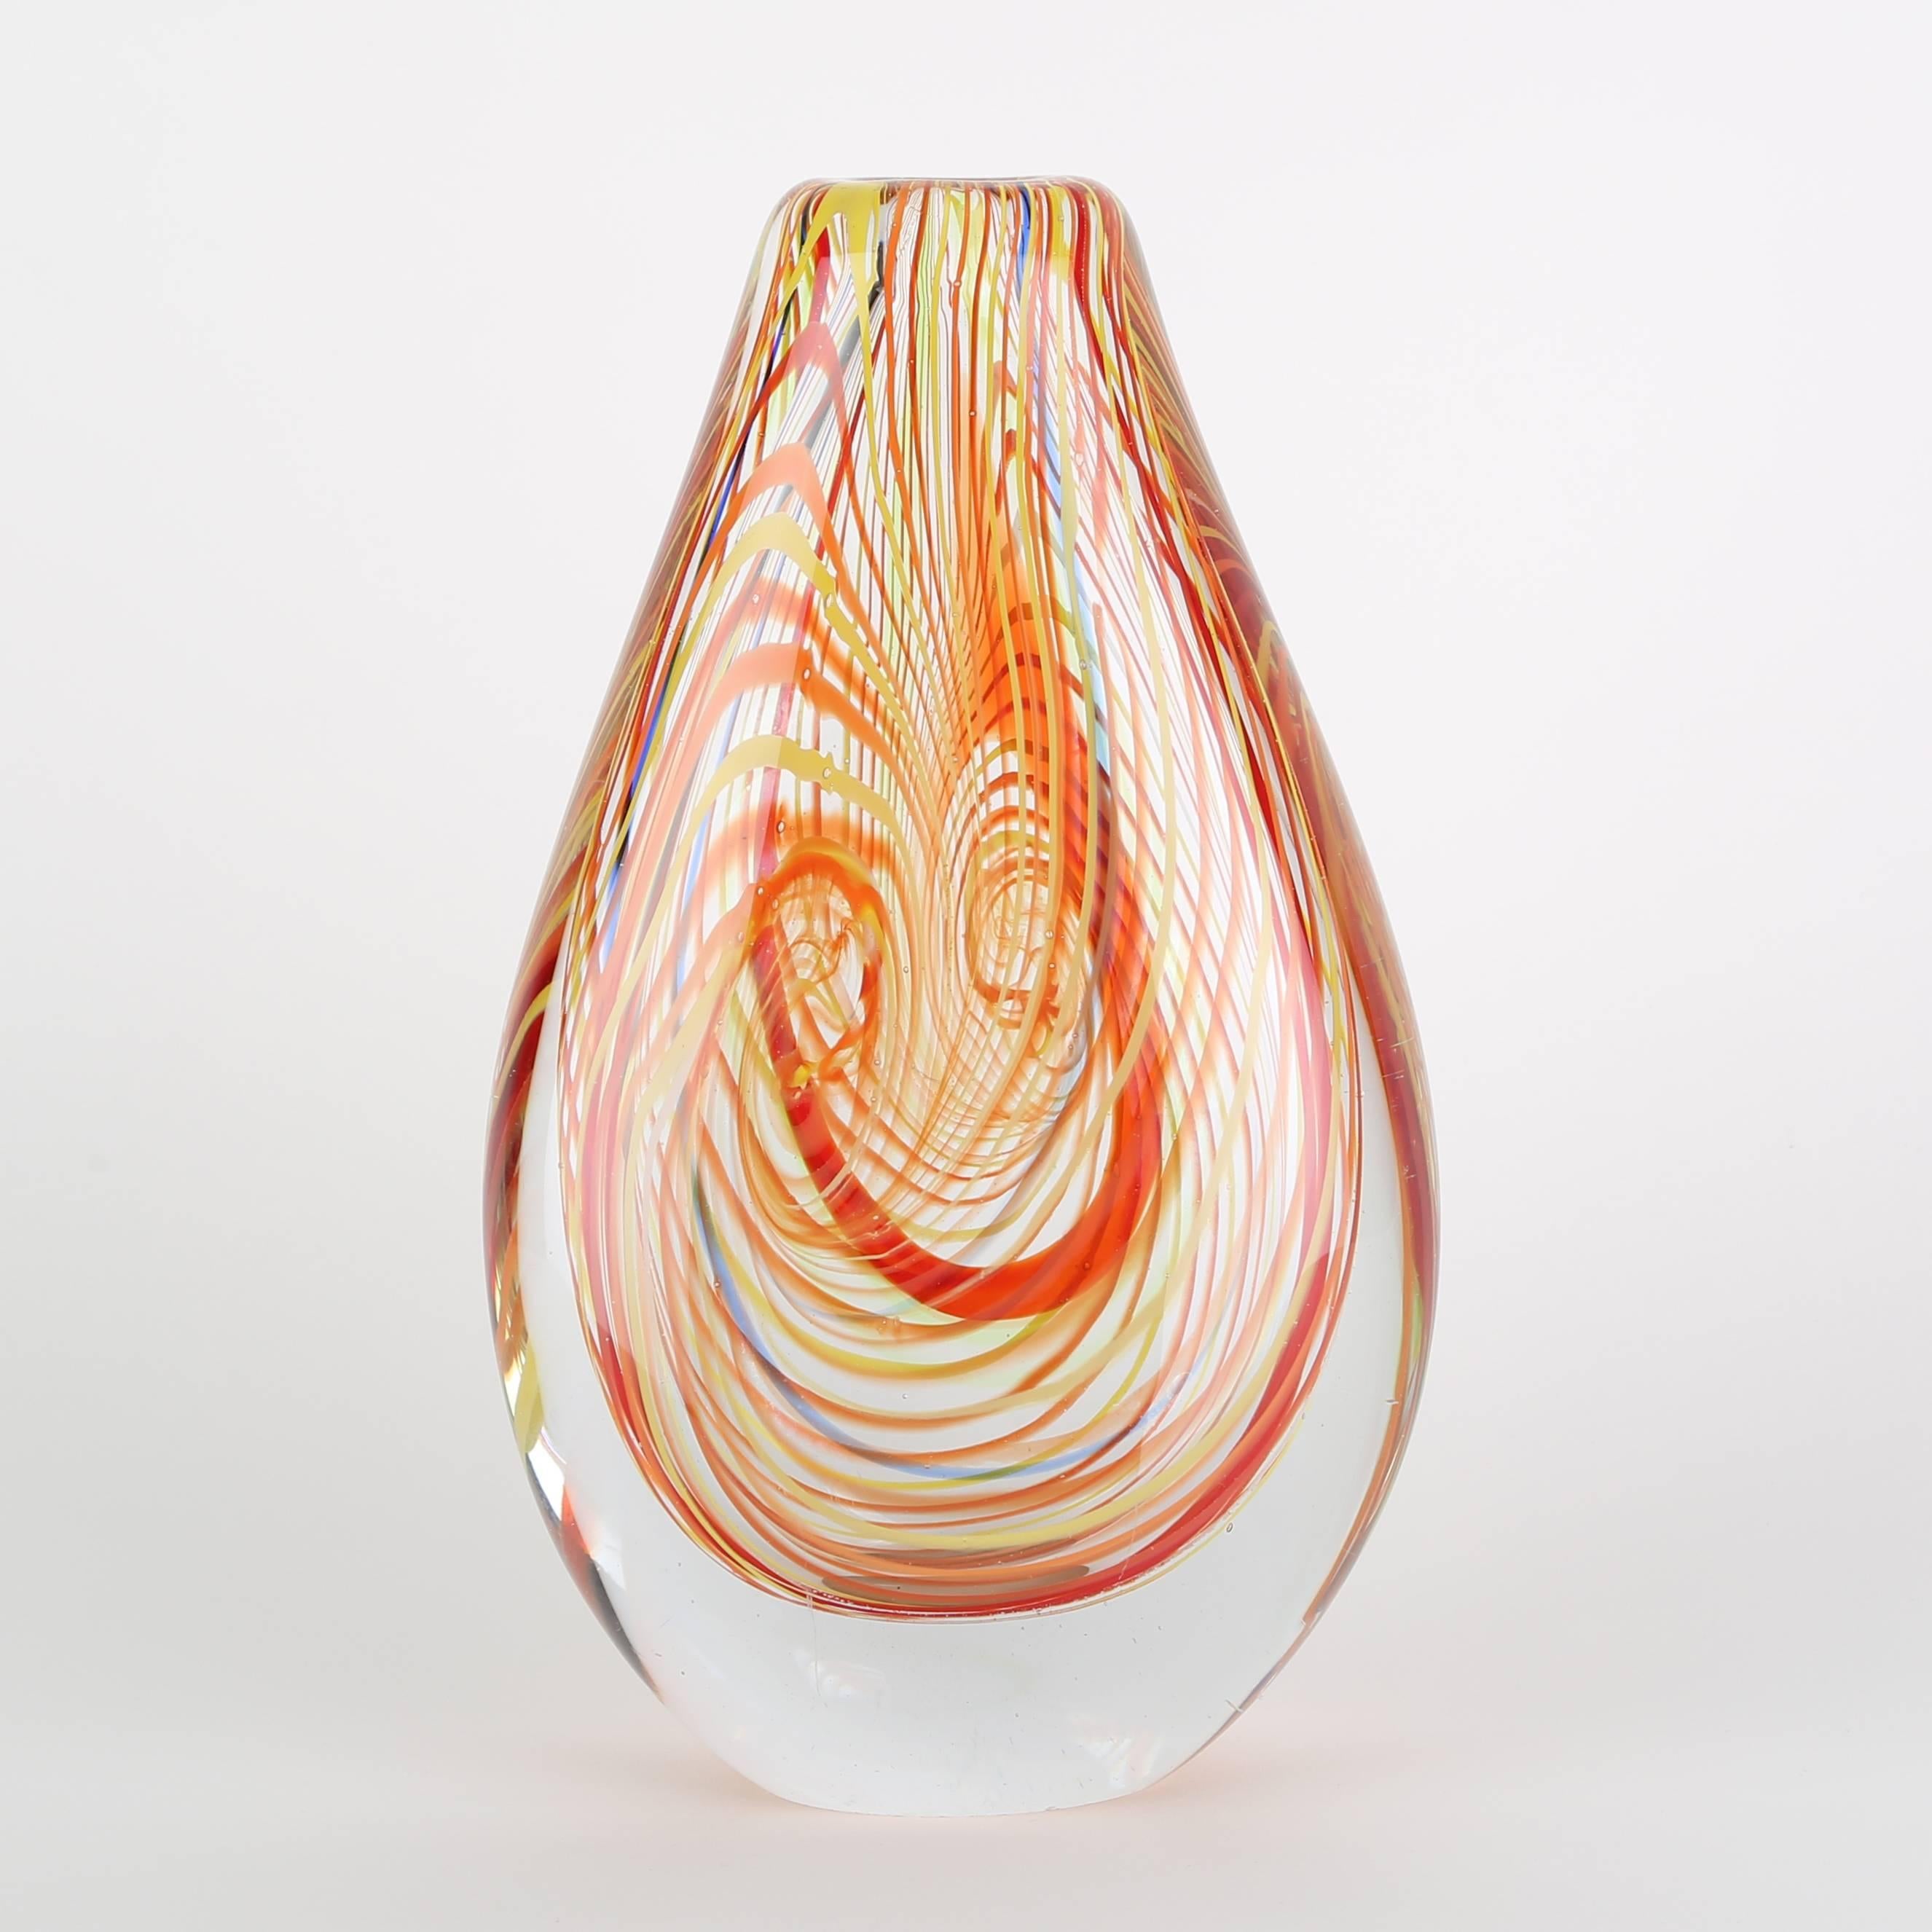 Italian Murano 1960s Art Glass Vase with Swirls of Orange, Red, Yellow and Blue